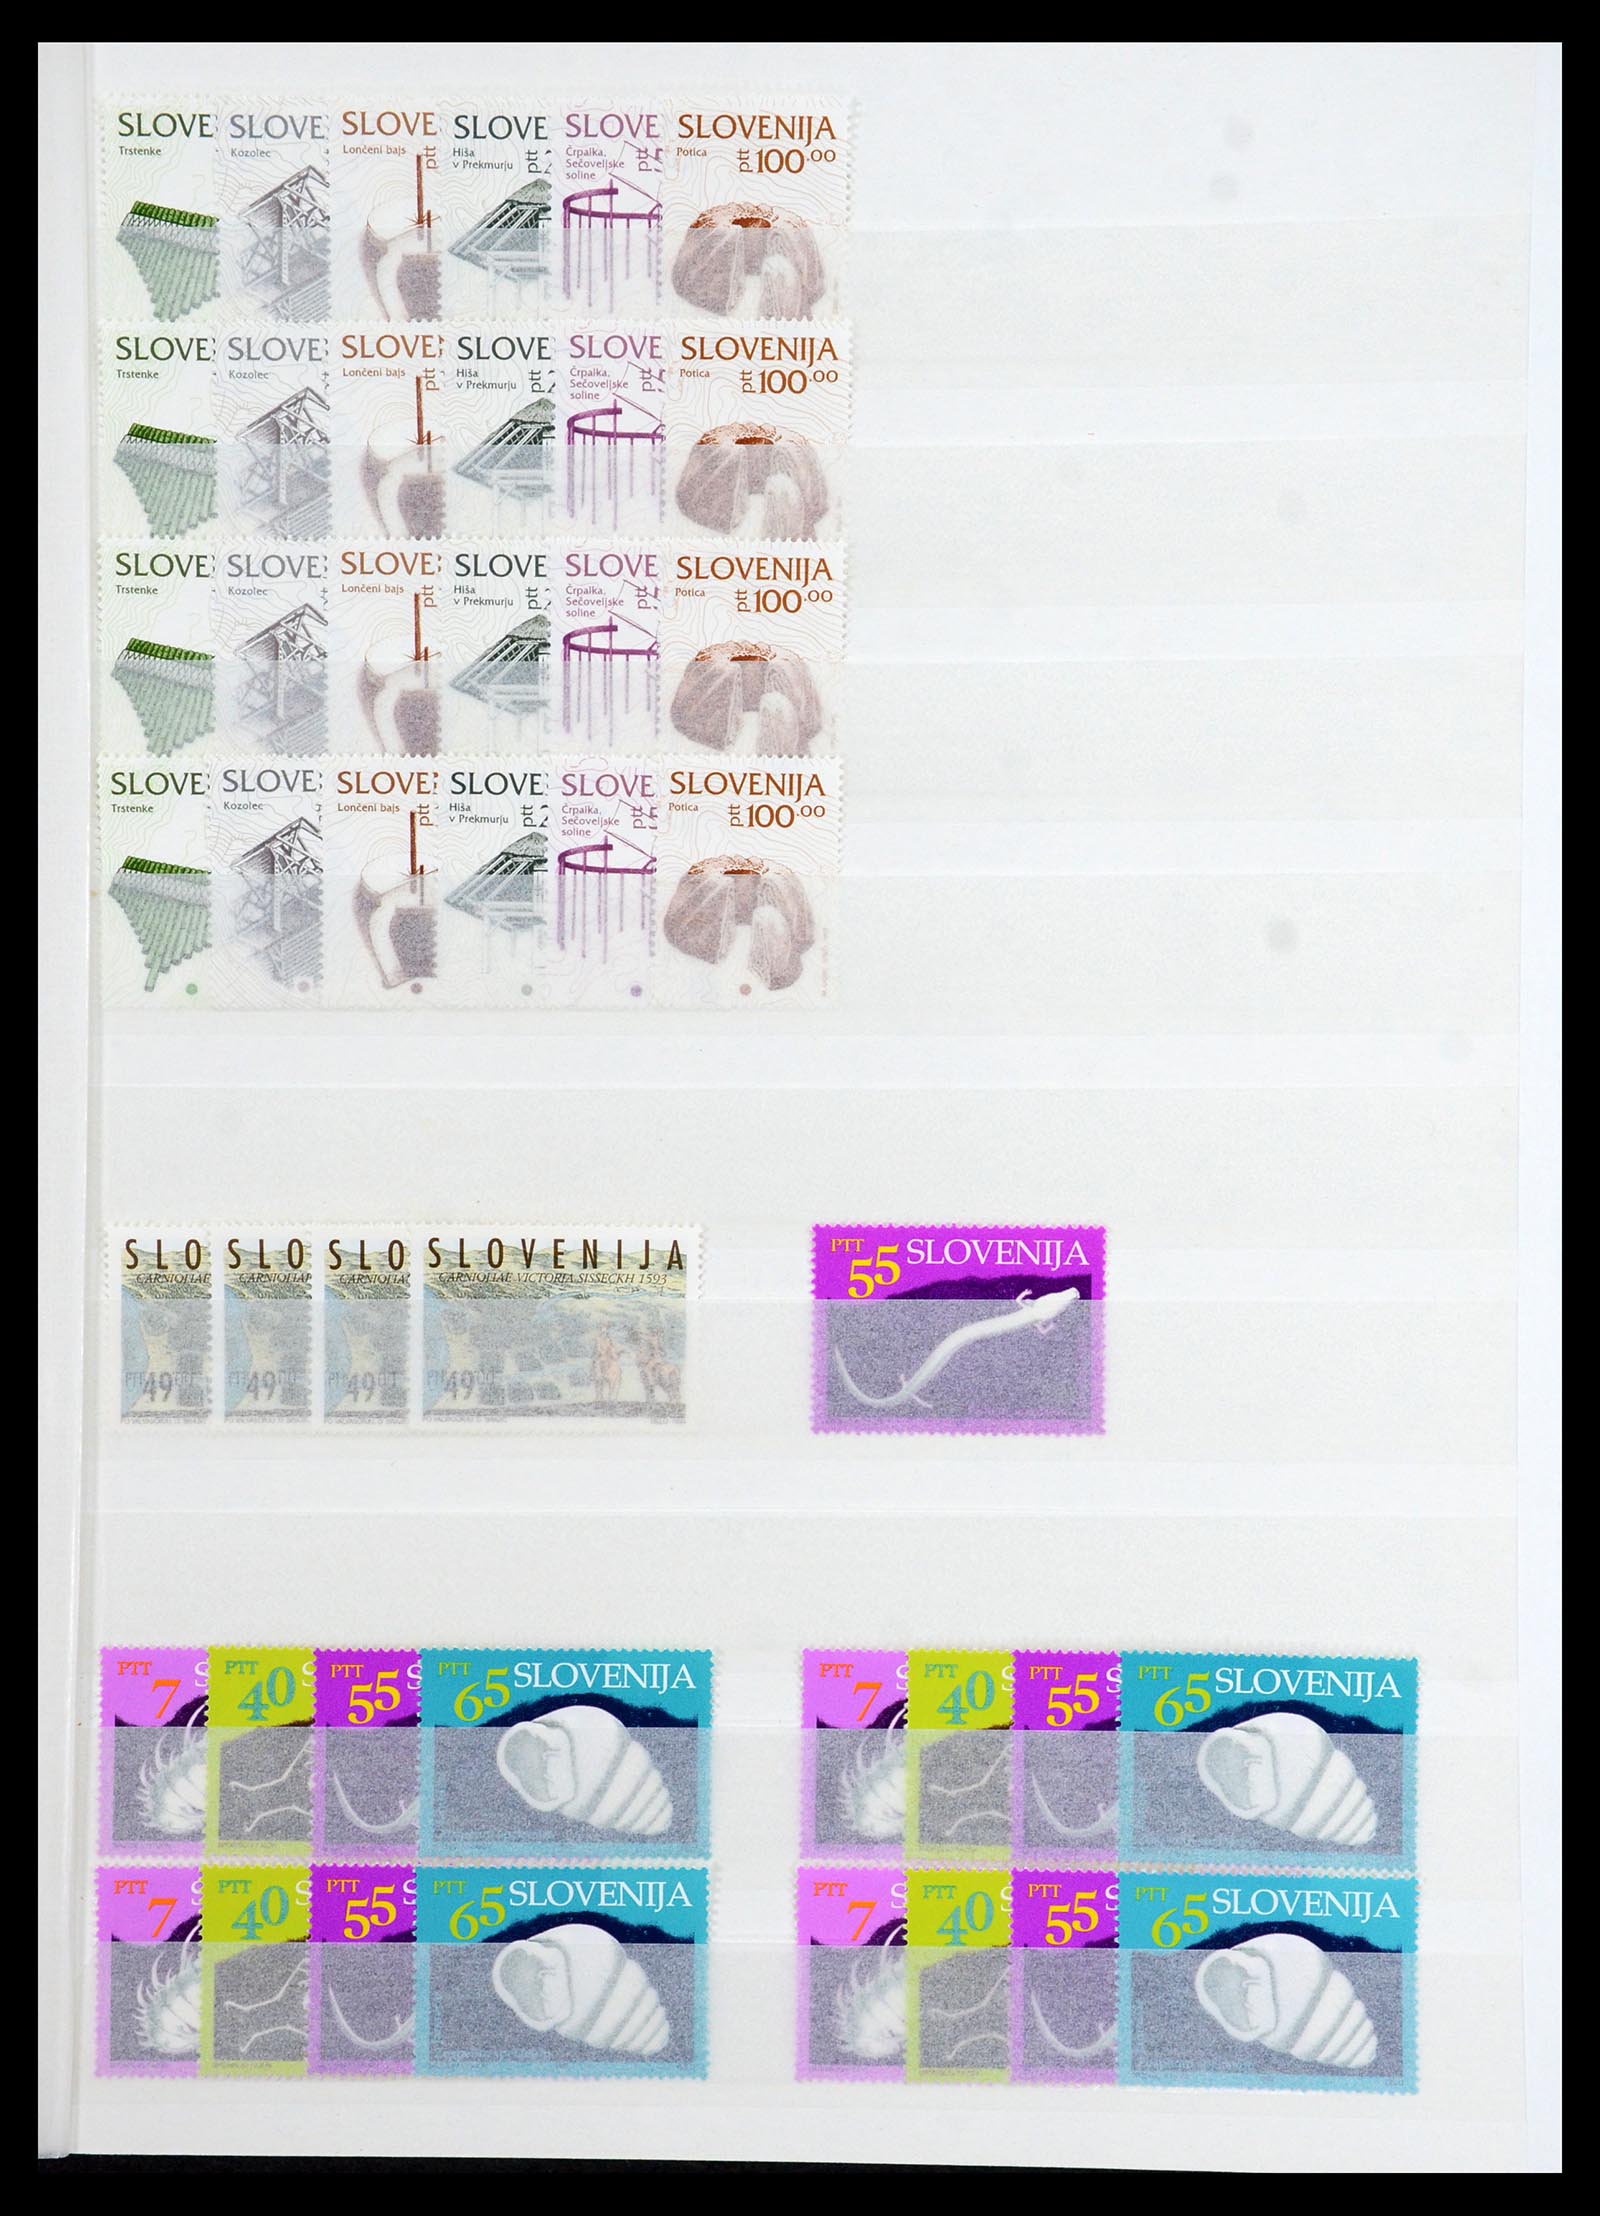 36461 007 - Stamp collection 36461 Slovenia, Croatia and Bosnia-Herzegovina MNH 1991